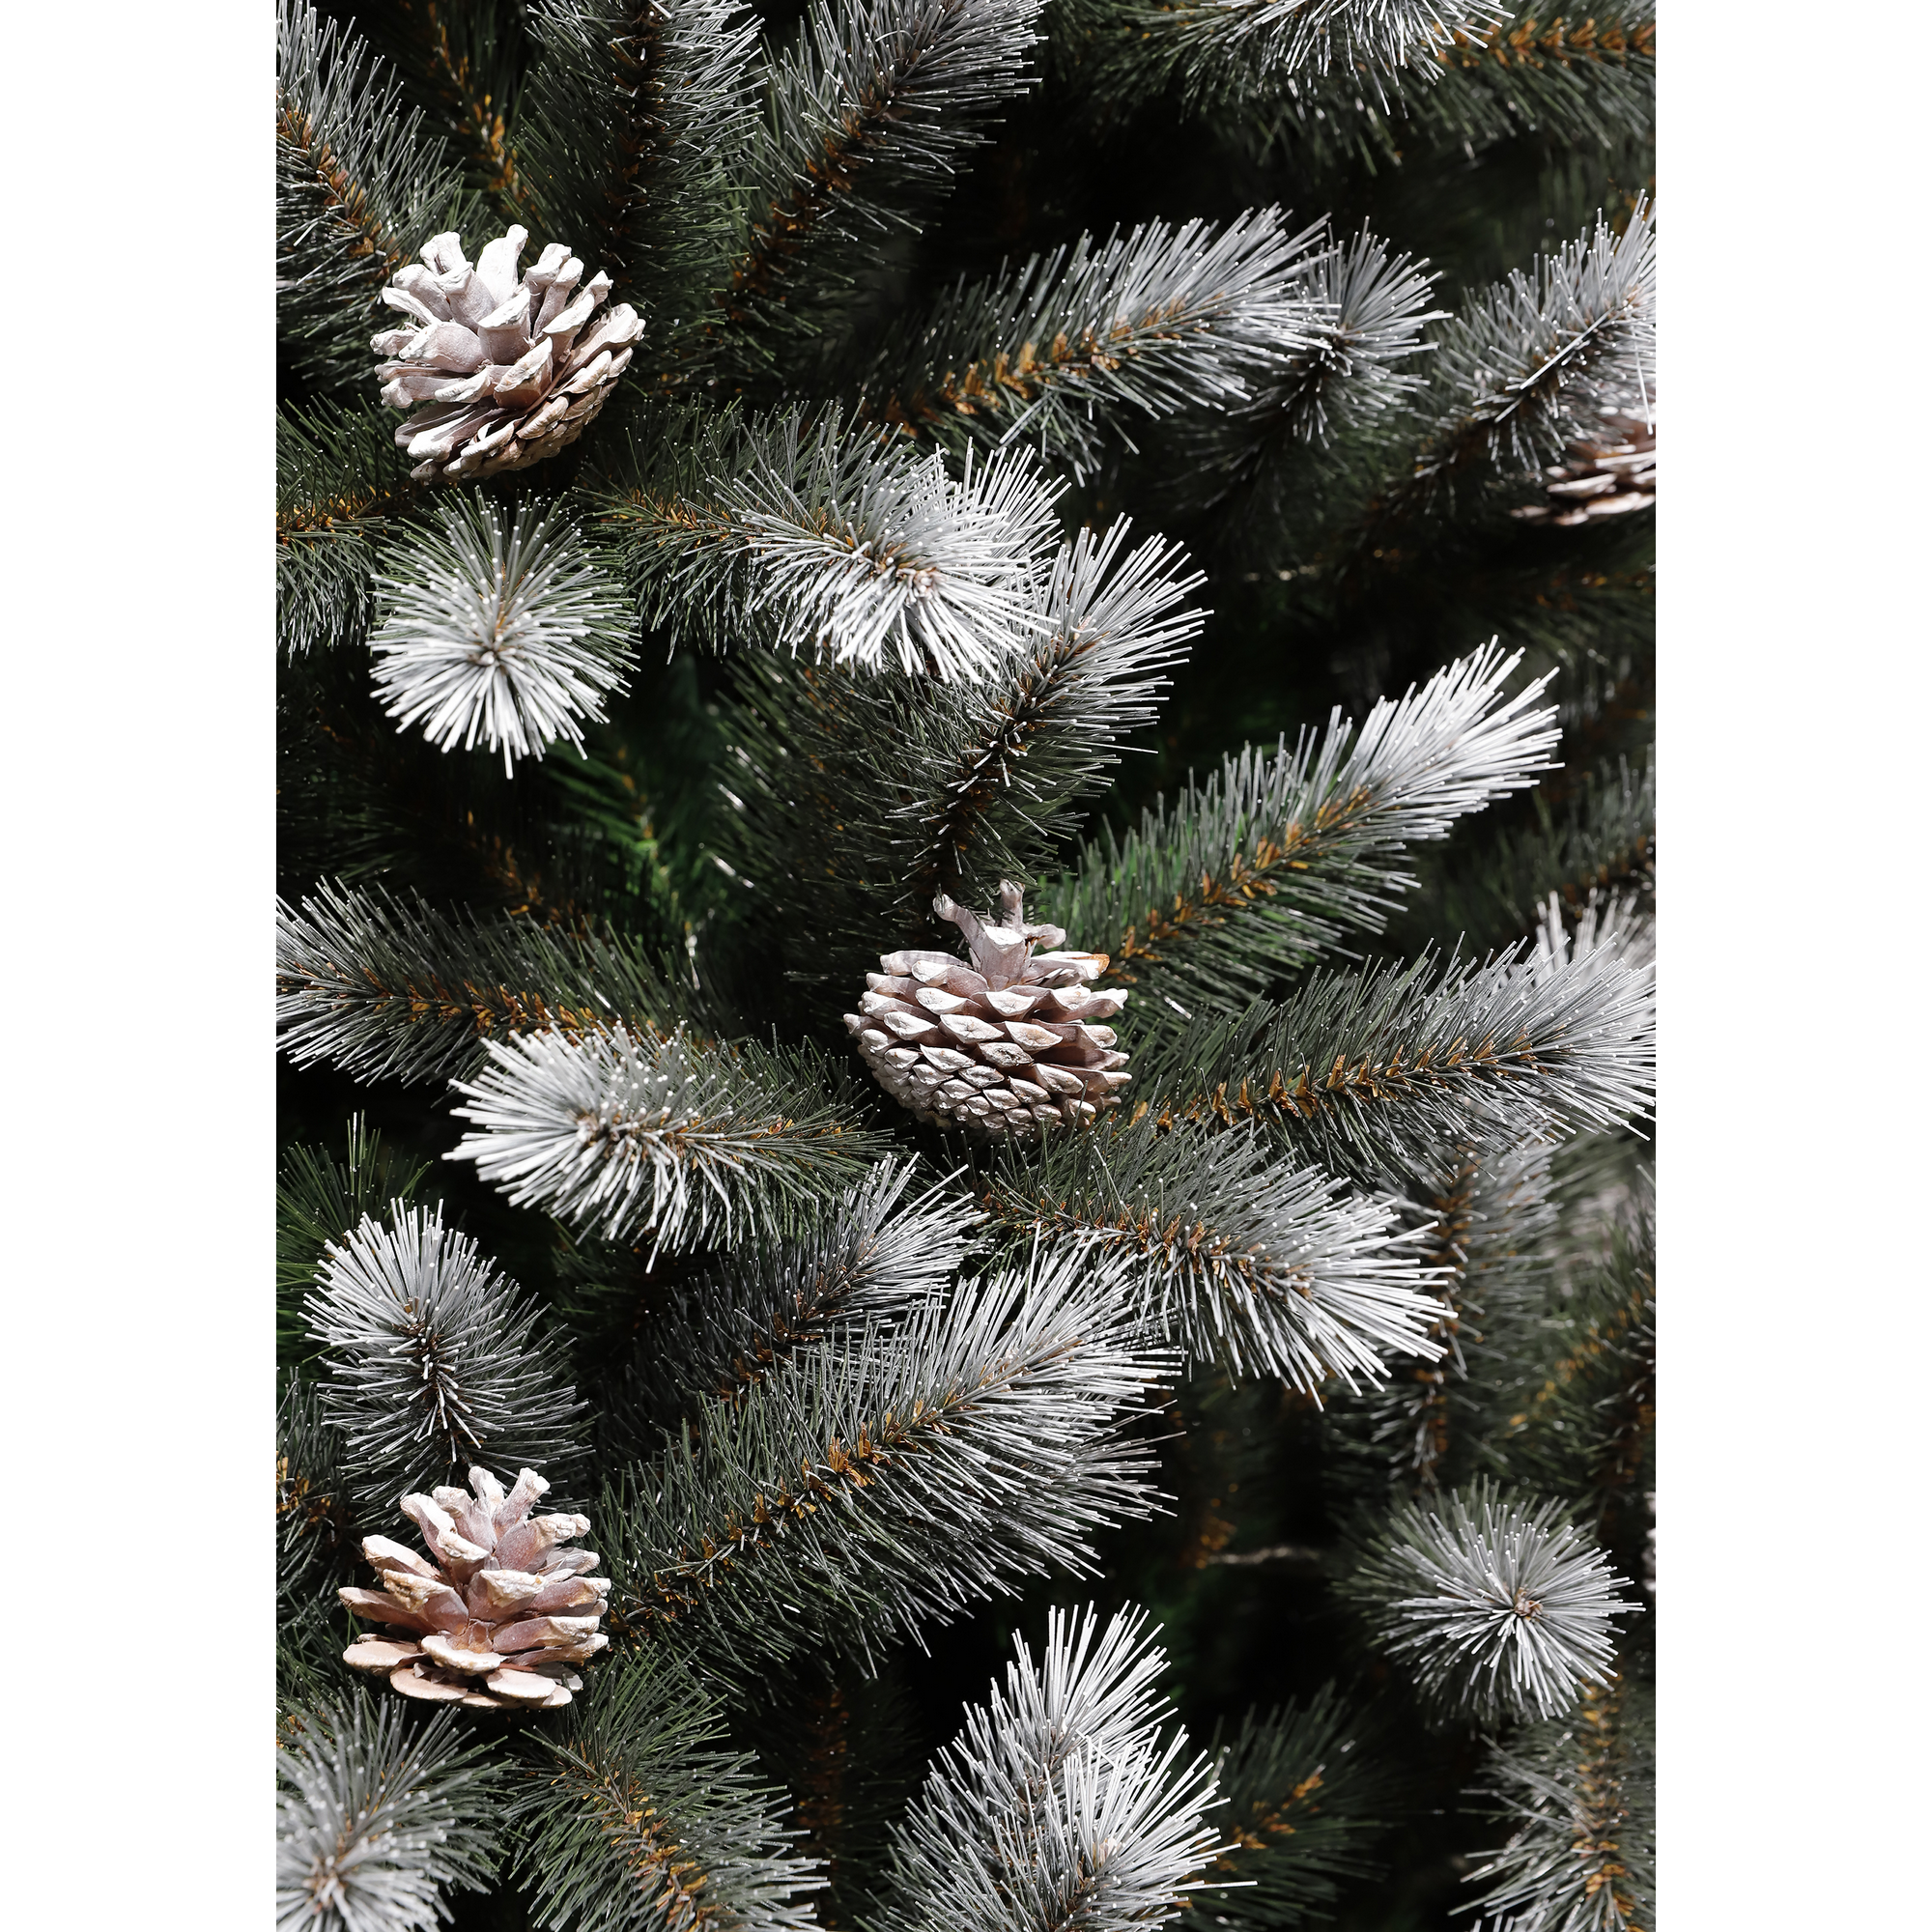 Künstlicher Weihnachtsbaum 'Aspen' grün/frosted 185 cm + product picture